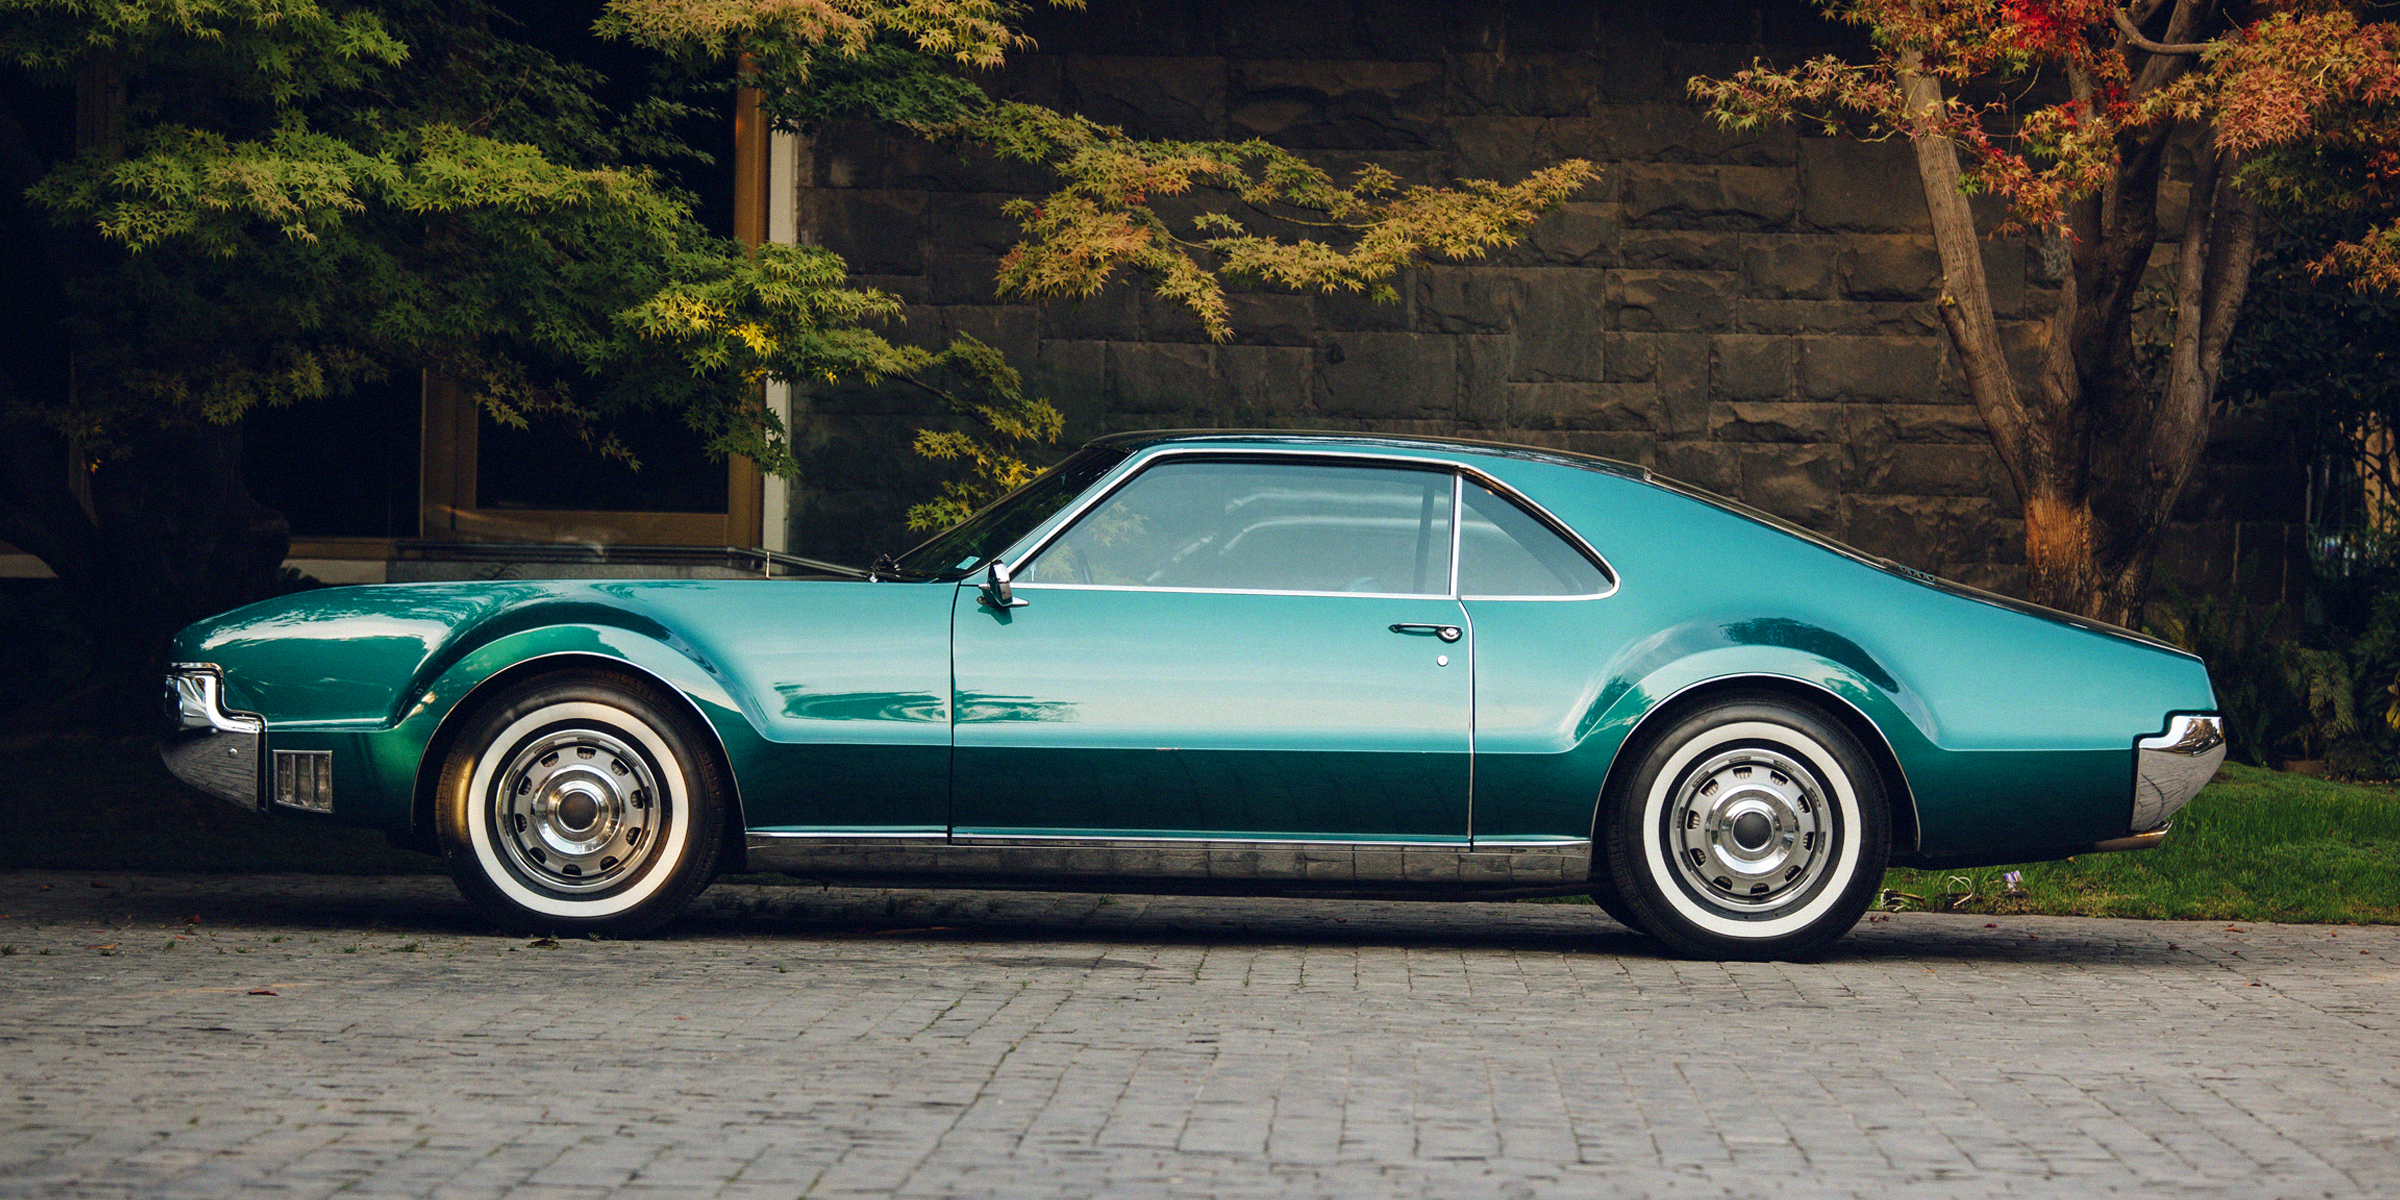 A classic car | Source: Shutterstock